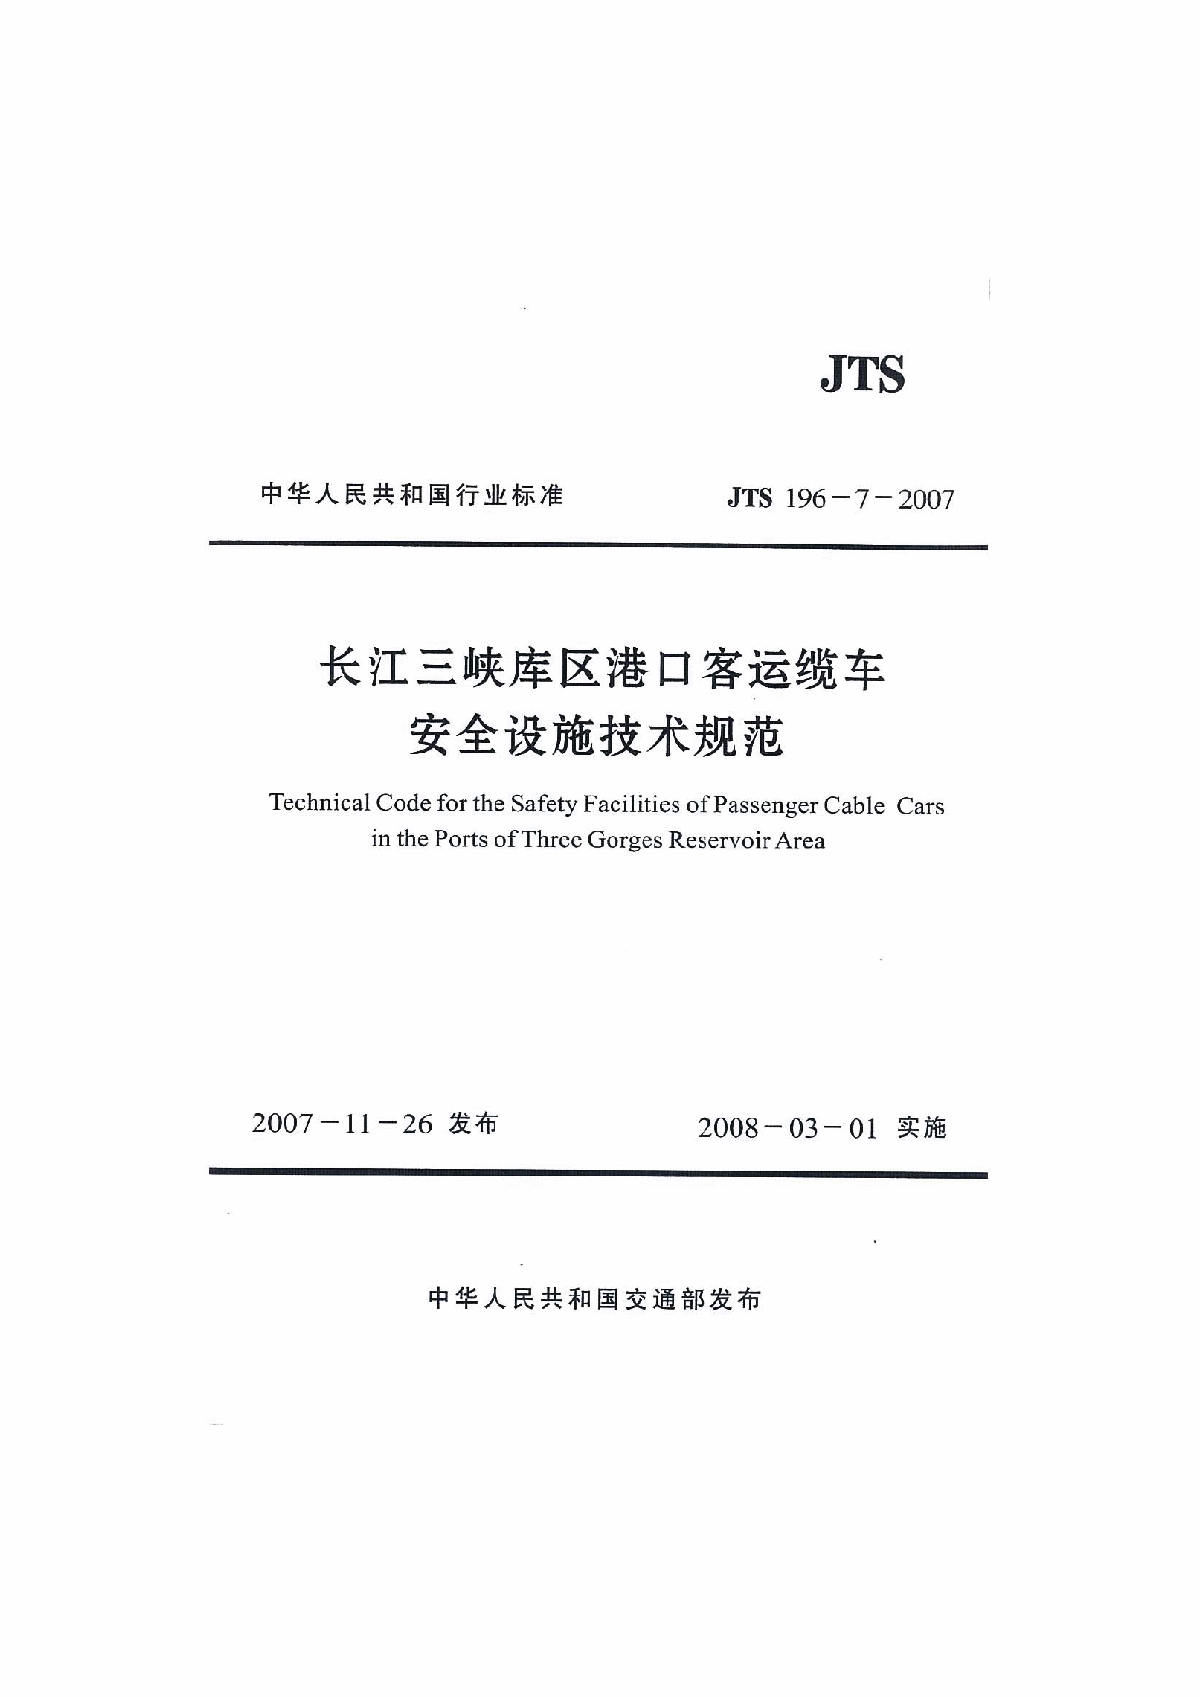 《长江三峡库区港口客运缆车安全设施技术规范》(JTS196-7-2007)